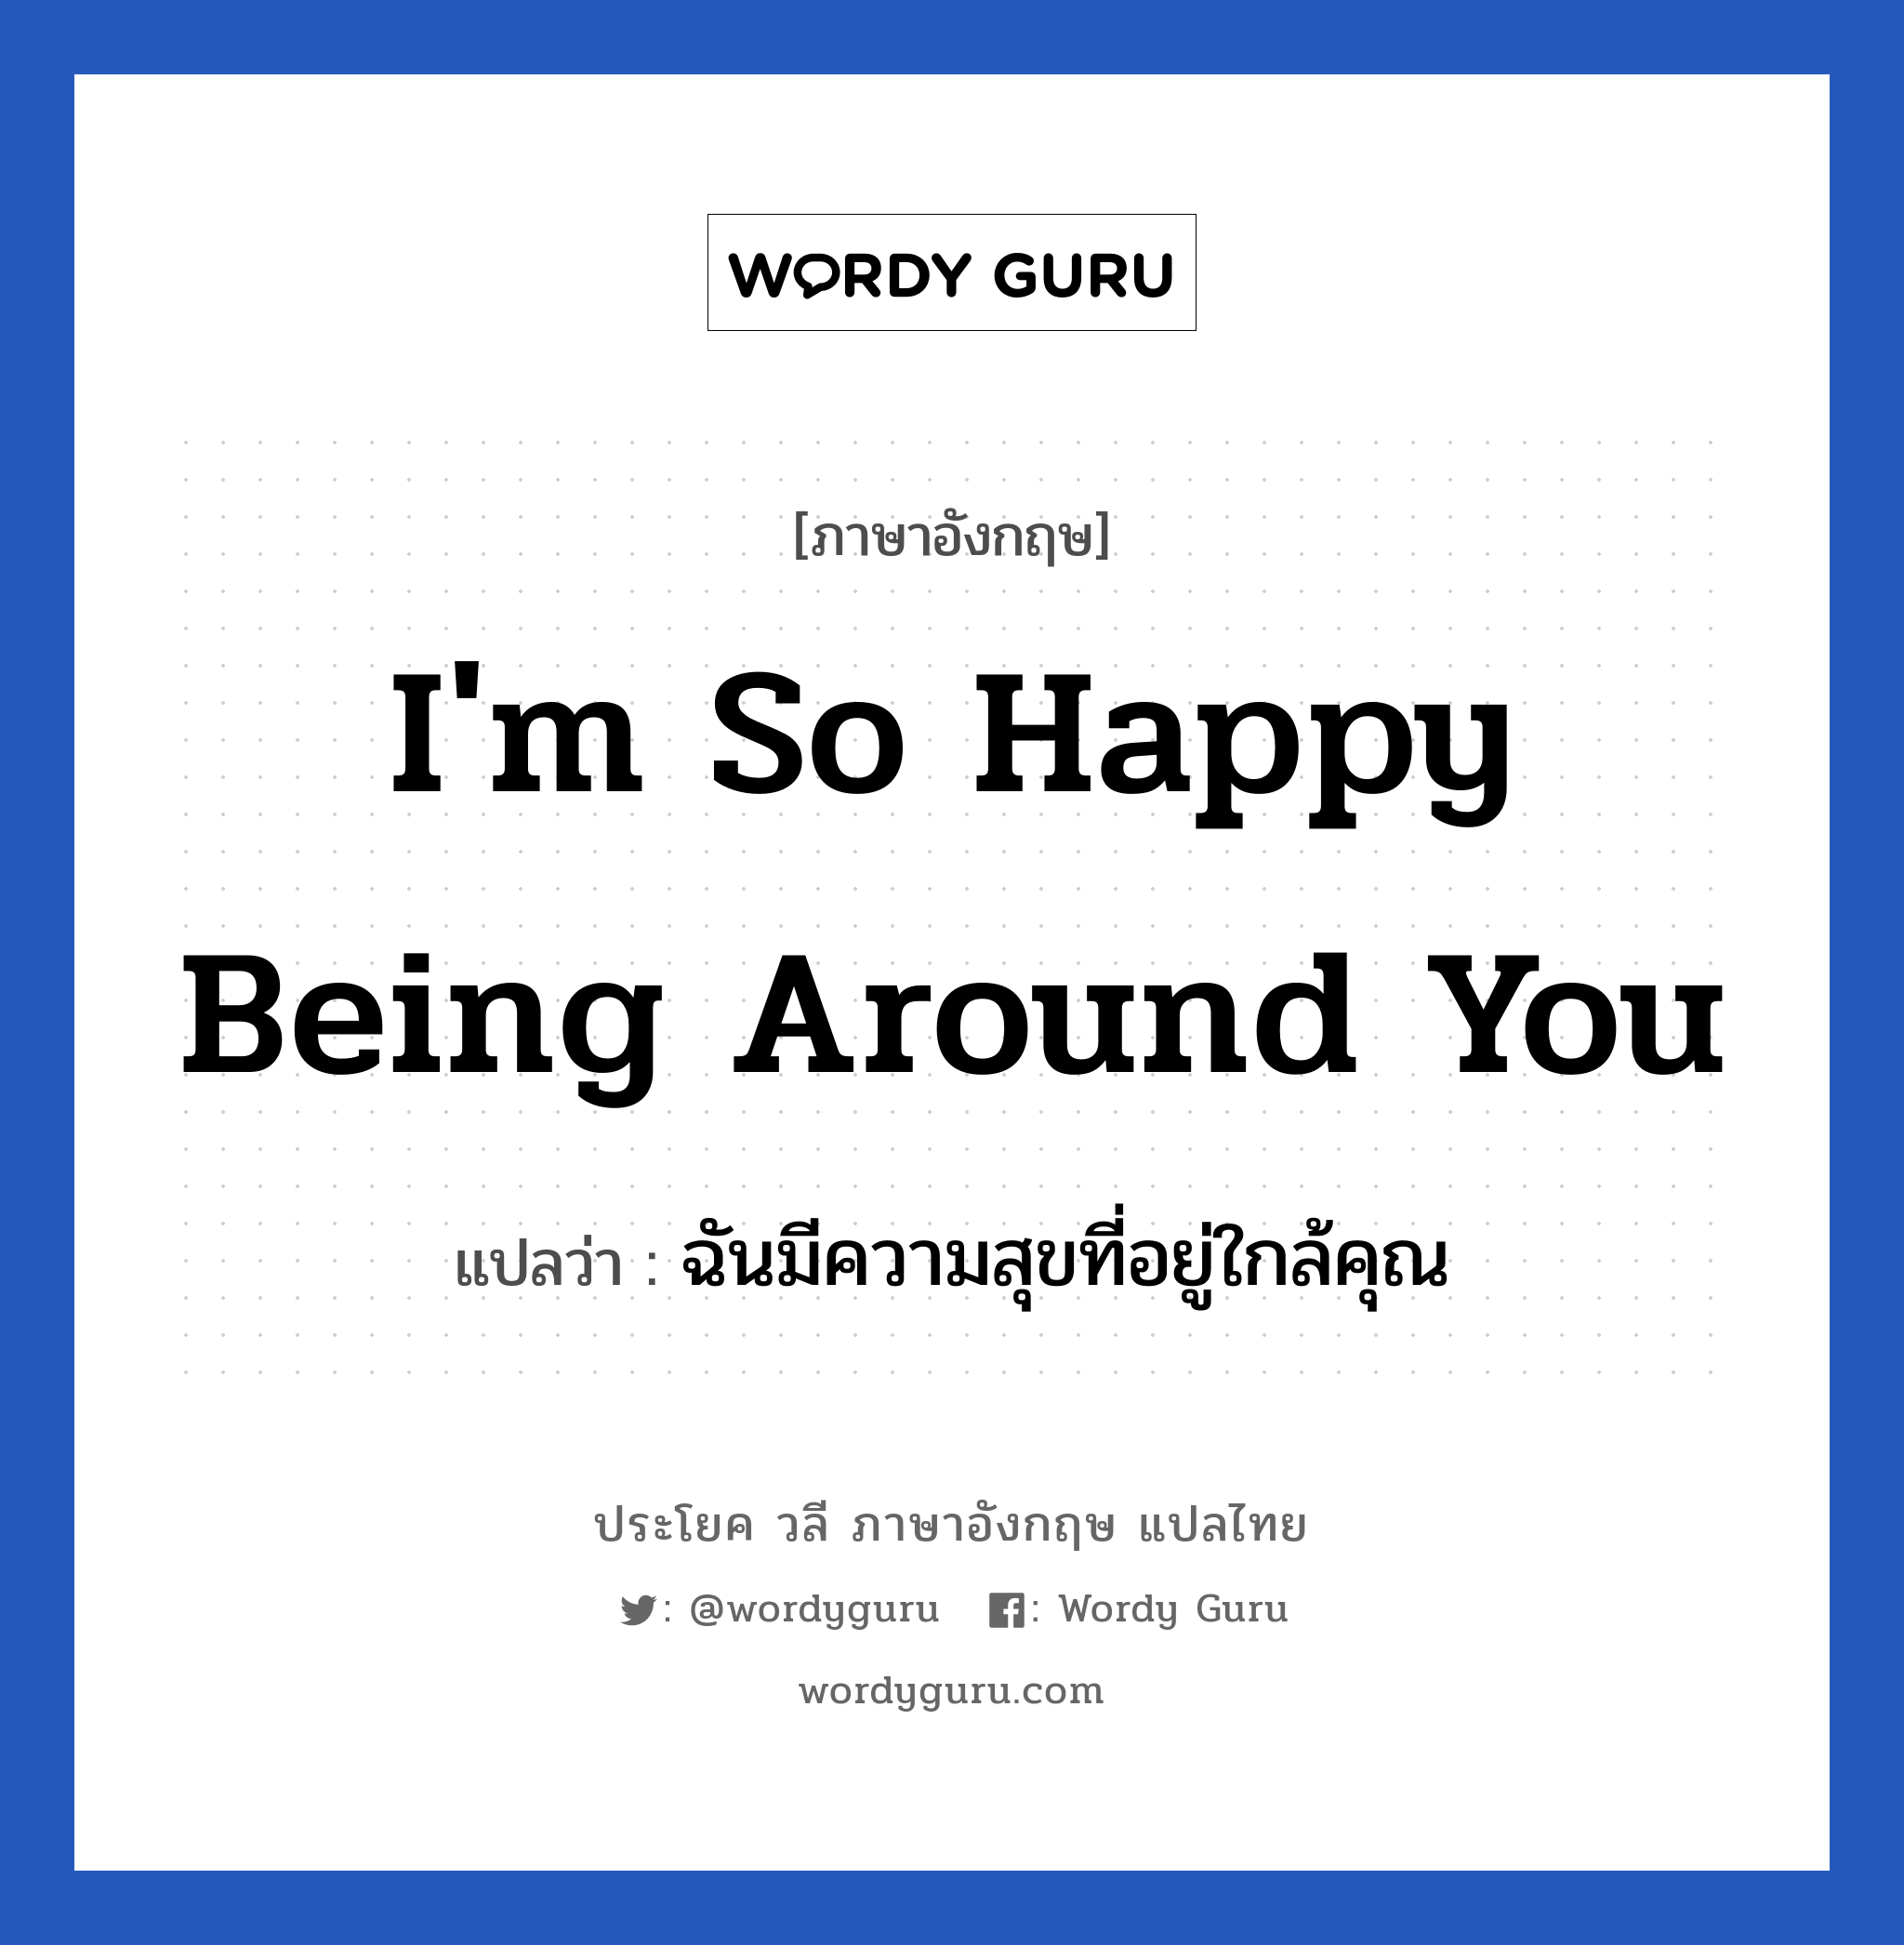 ฉันมีความสุขที่อยู่ใกล้คุณ ภาษาอังกฤษ?, วลีภาษาอังกฤษ ฉันมีความสุขที่อยู่ใกล้คุณ แปลว่า I'm so happy being around you หมวด ความรัก